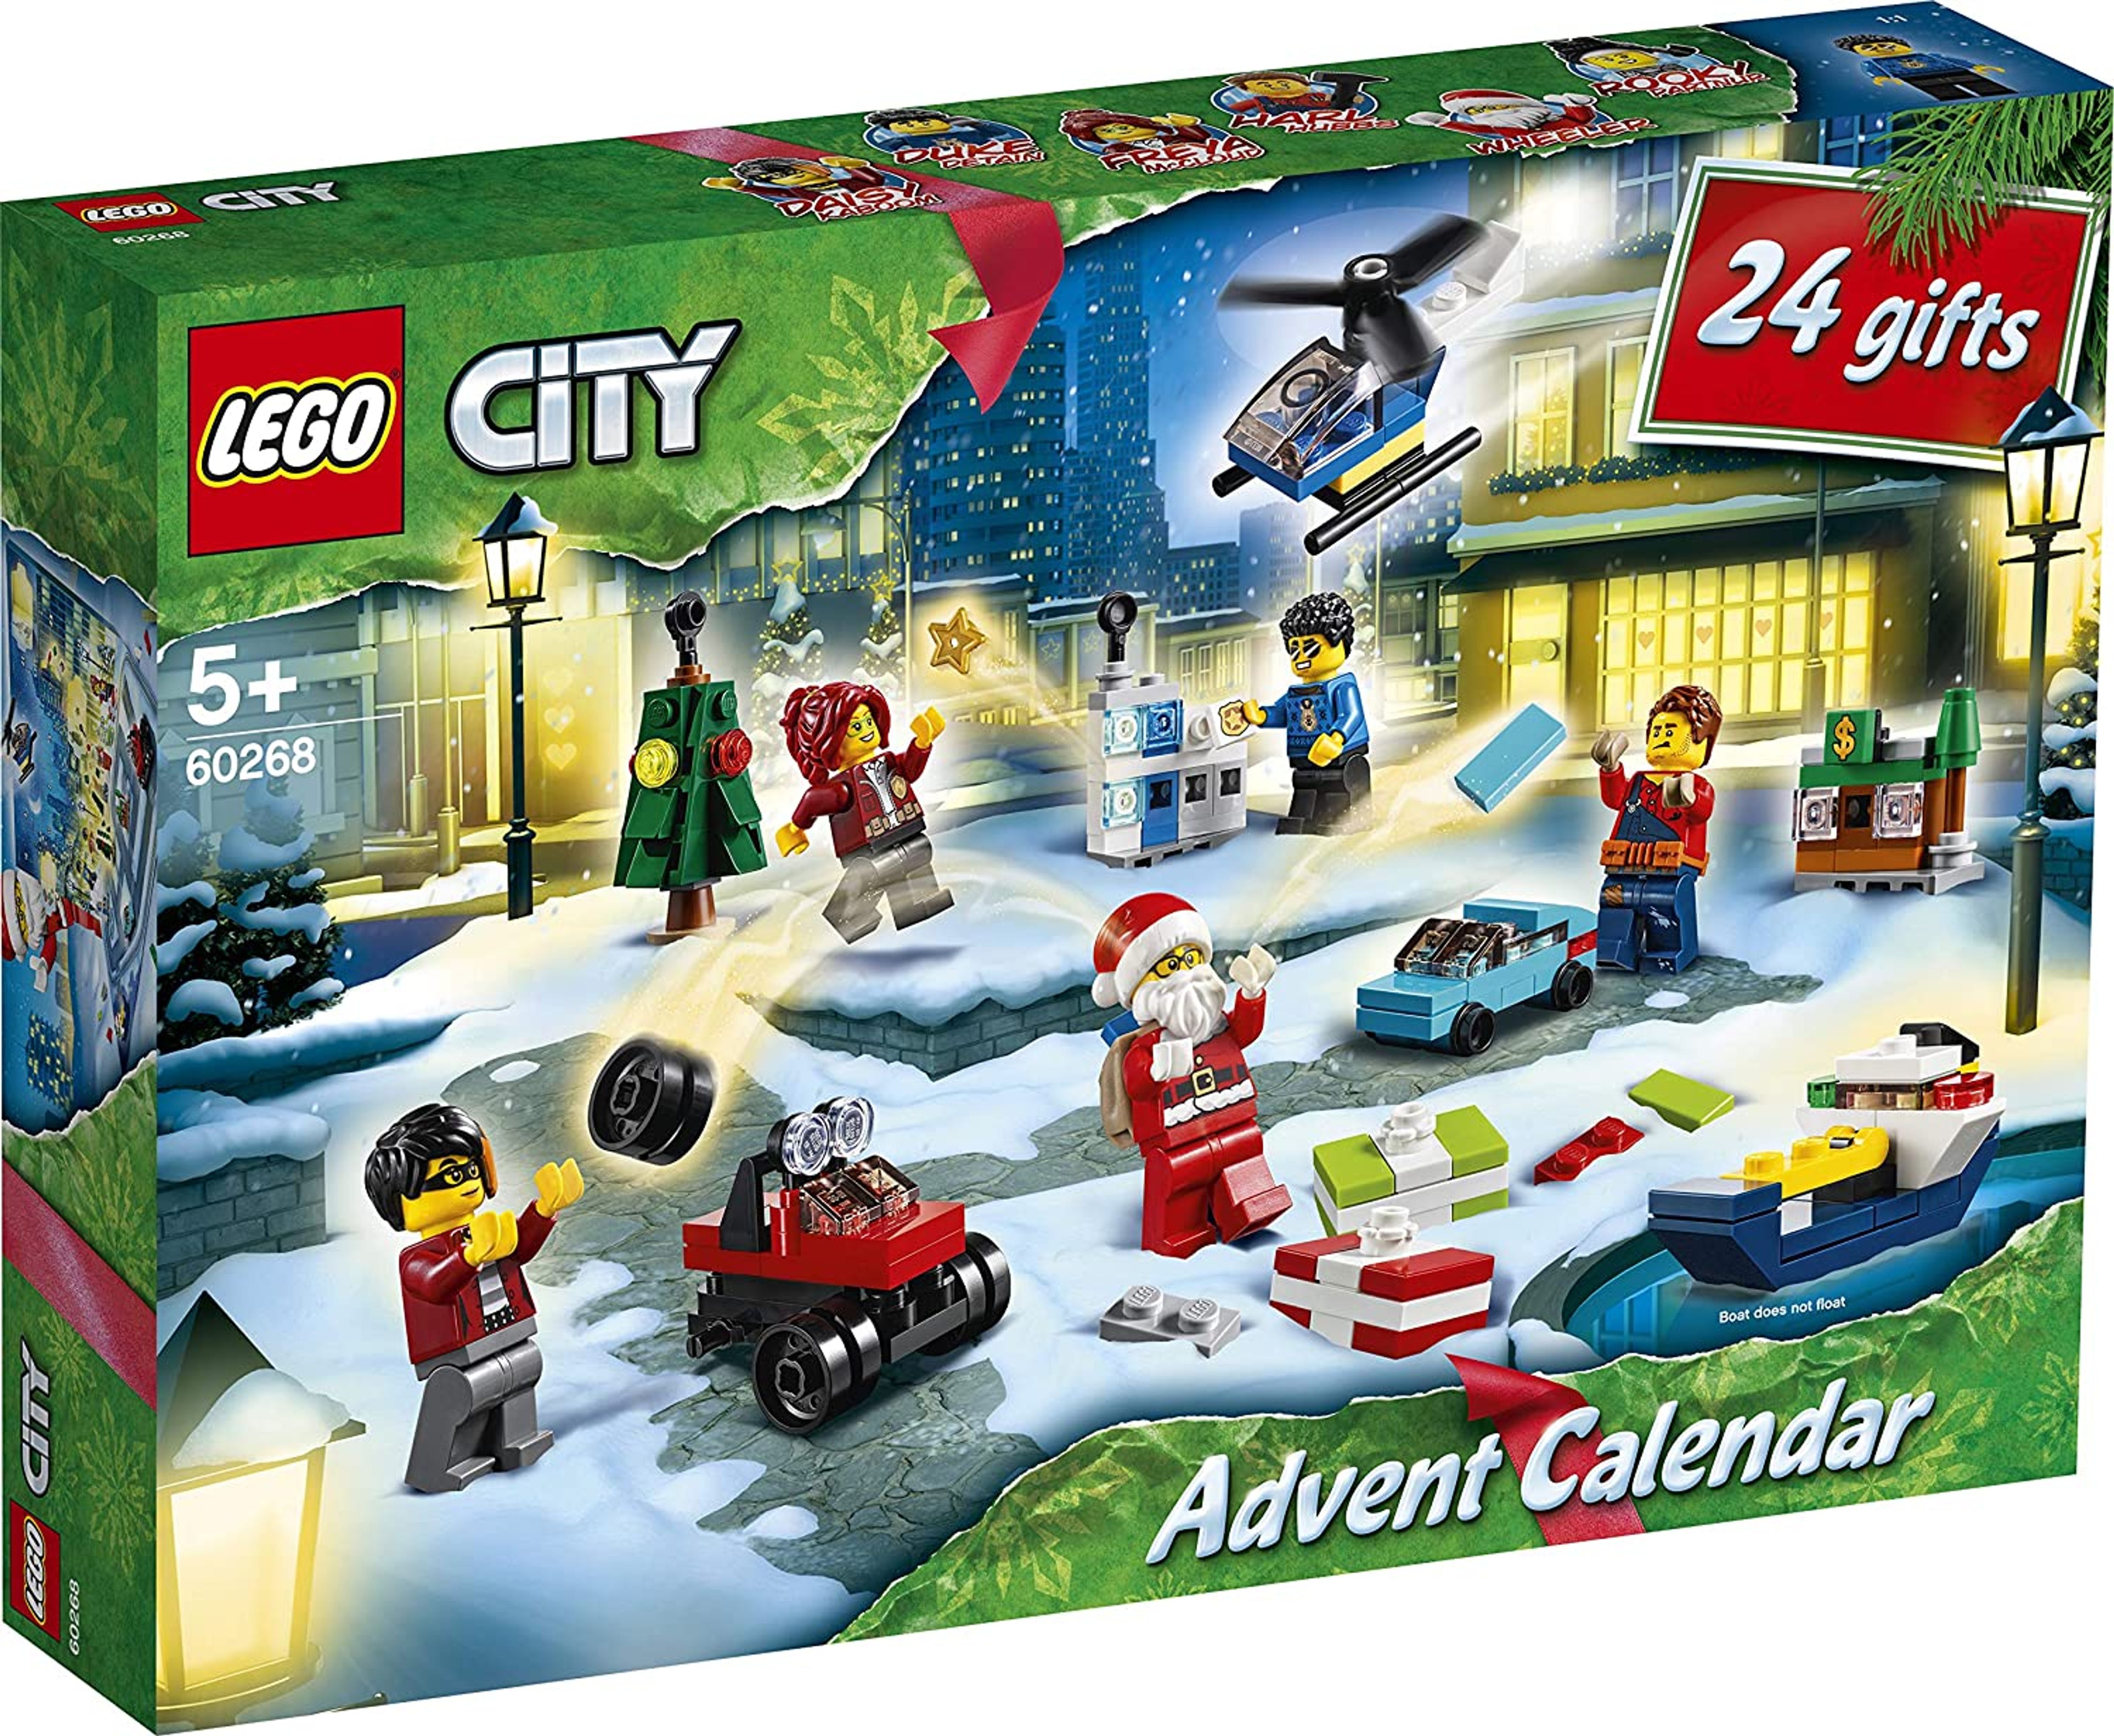 Calendrier de l’Avent Lego 2020 : éditions limitées de ce Noël